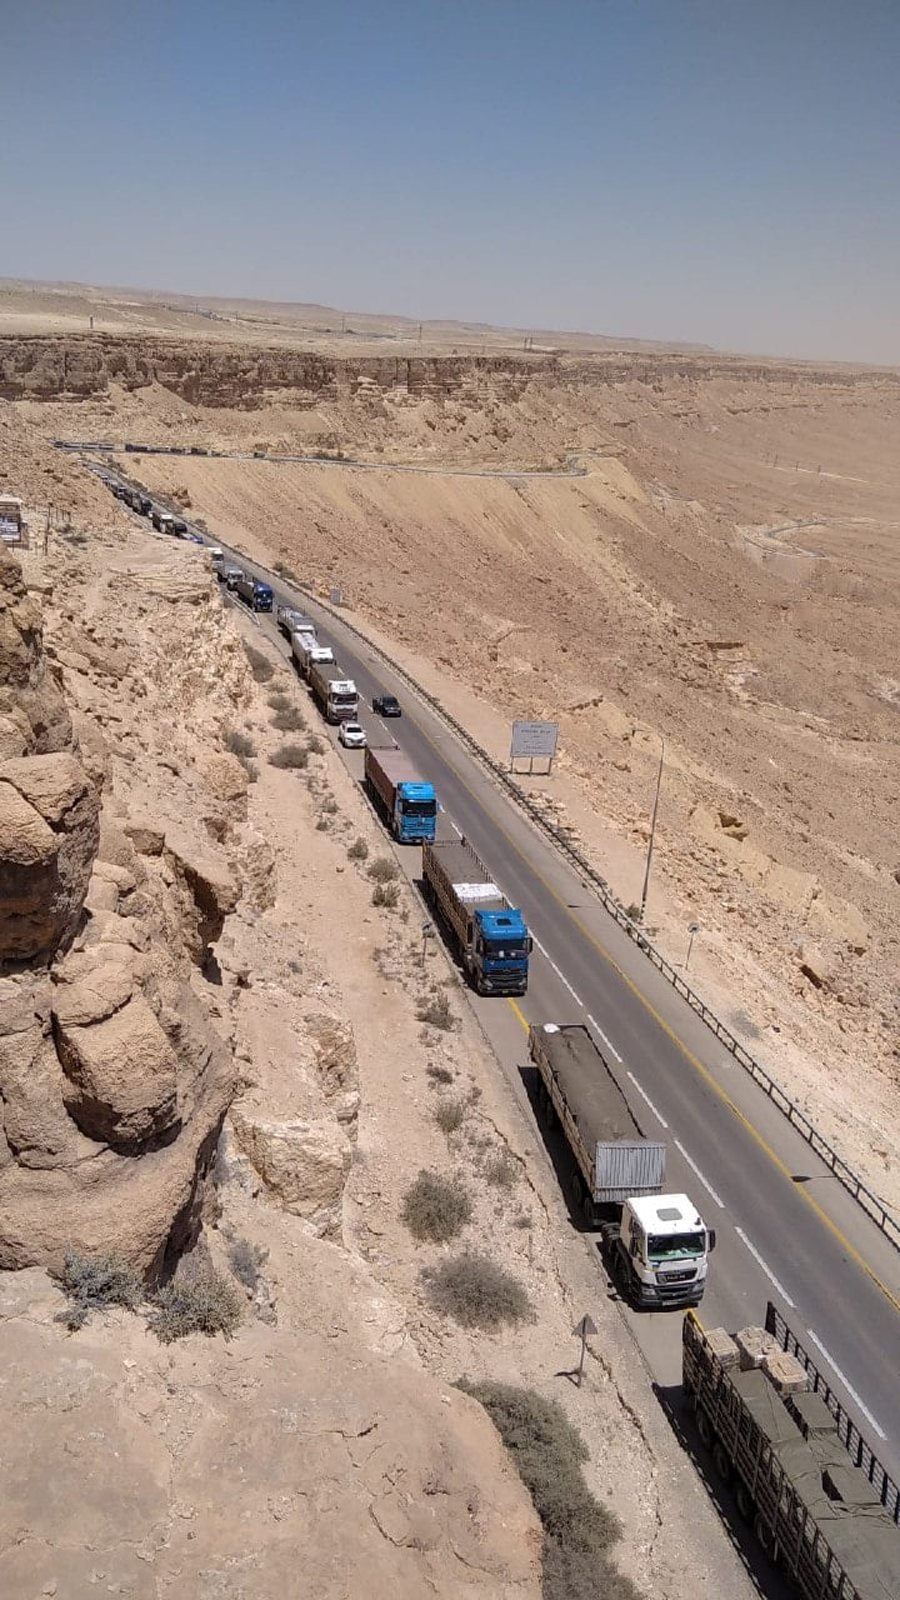 שיירת משאיות הסיוע ההומניטרי לעזה נחסמה סמוך למצפה רמון